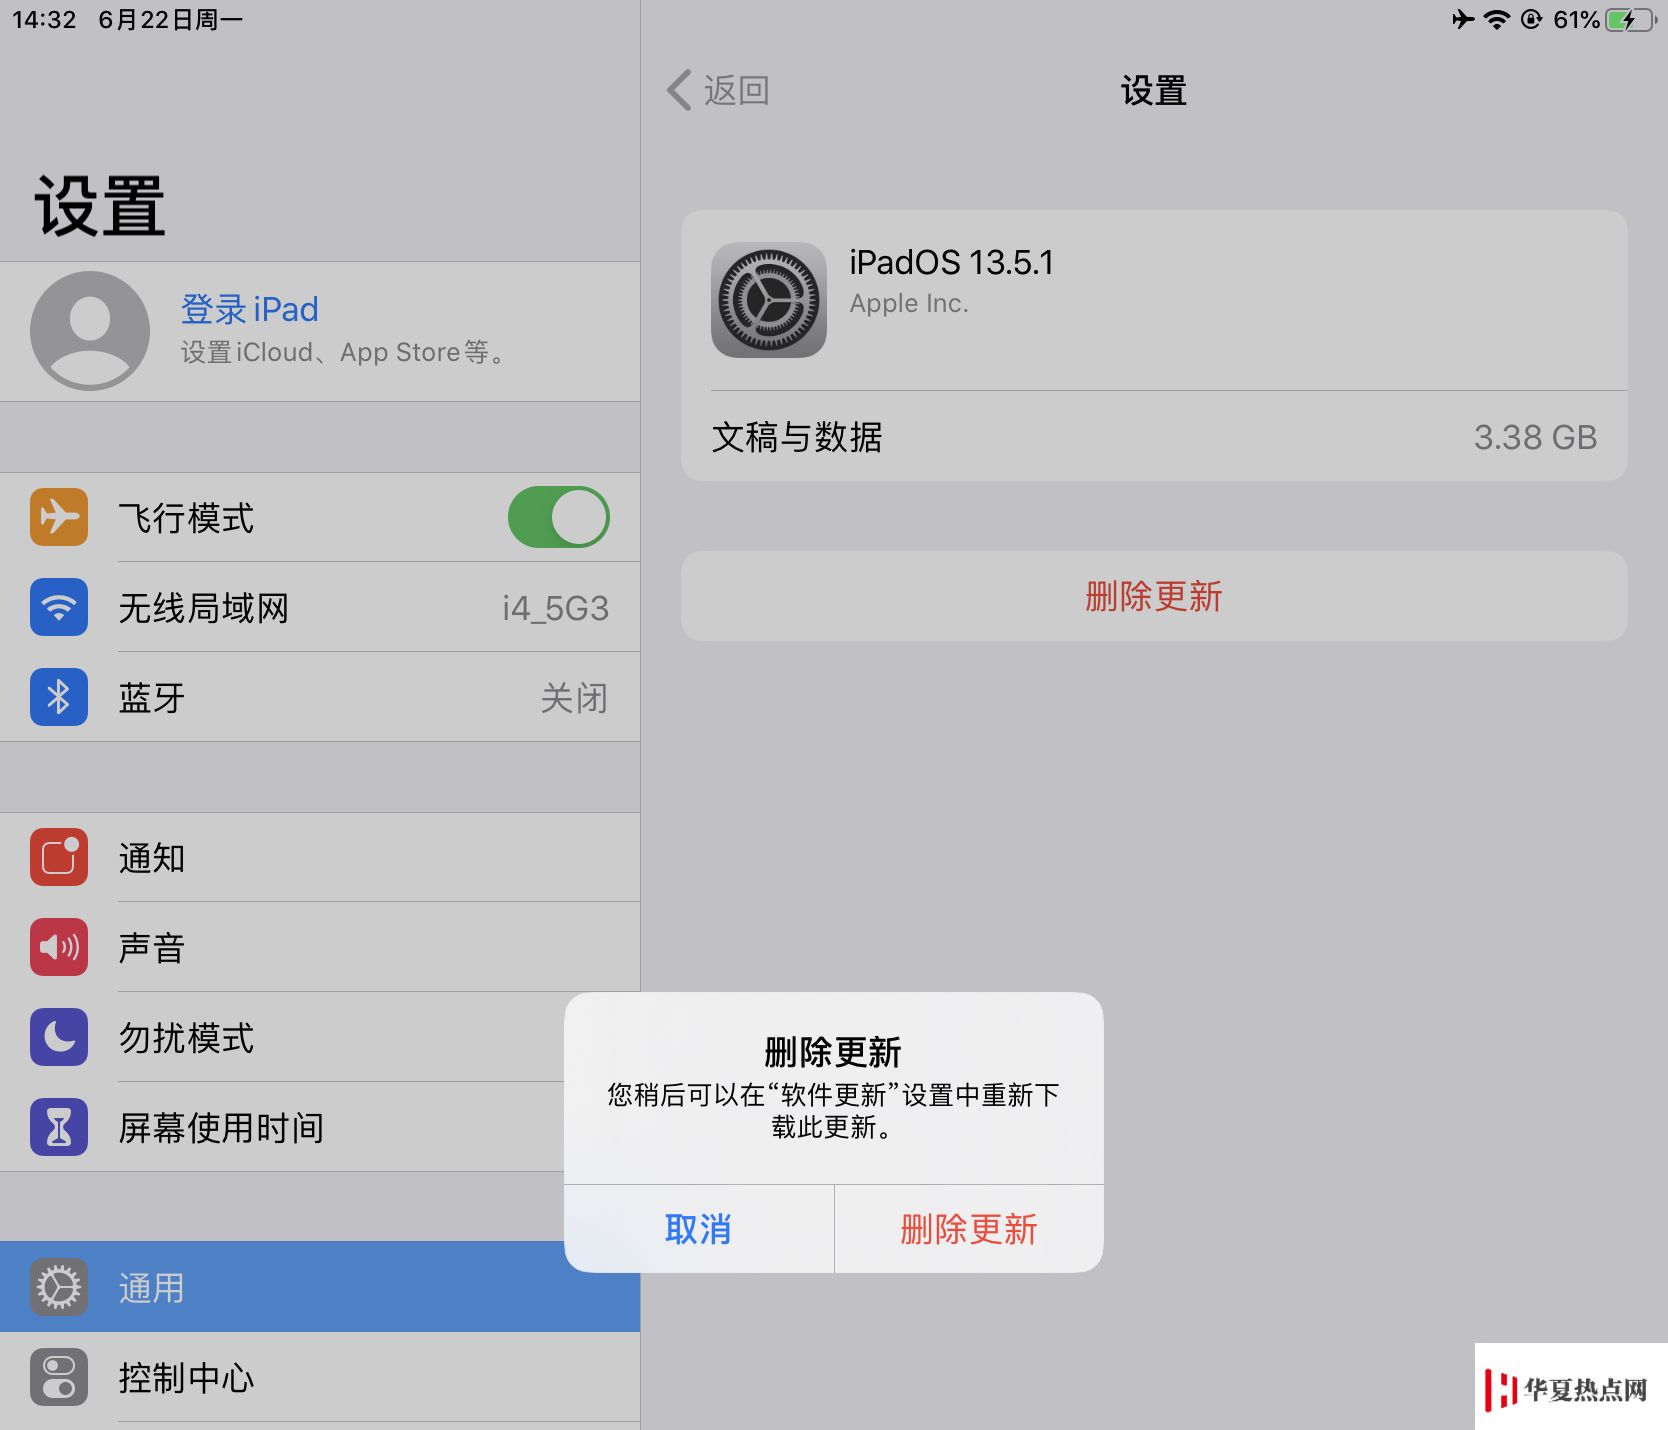 爱思助手 PC 端“屏蔽 iOS 更新”功能已支持 iOS 13